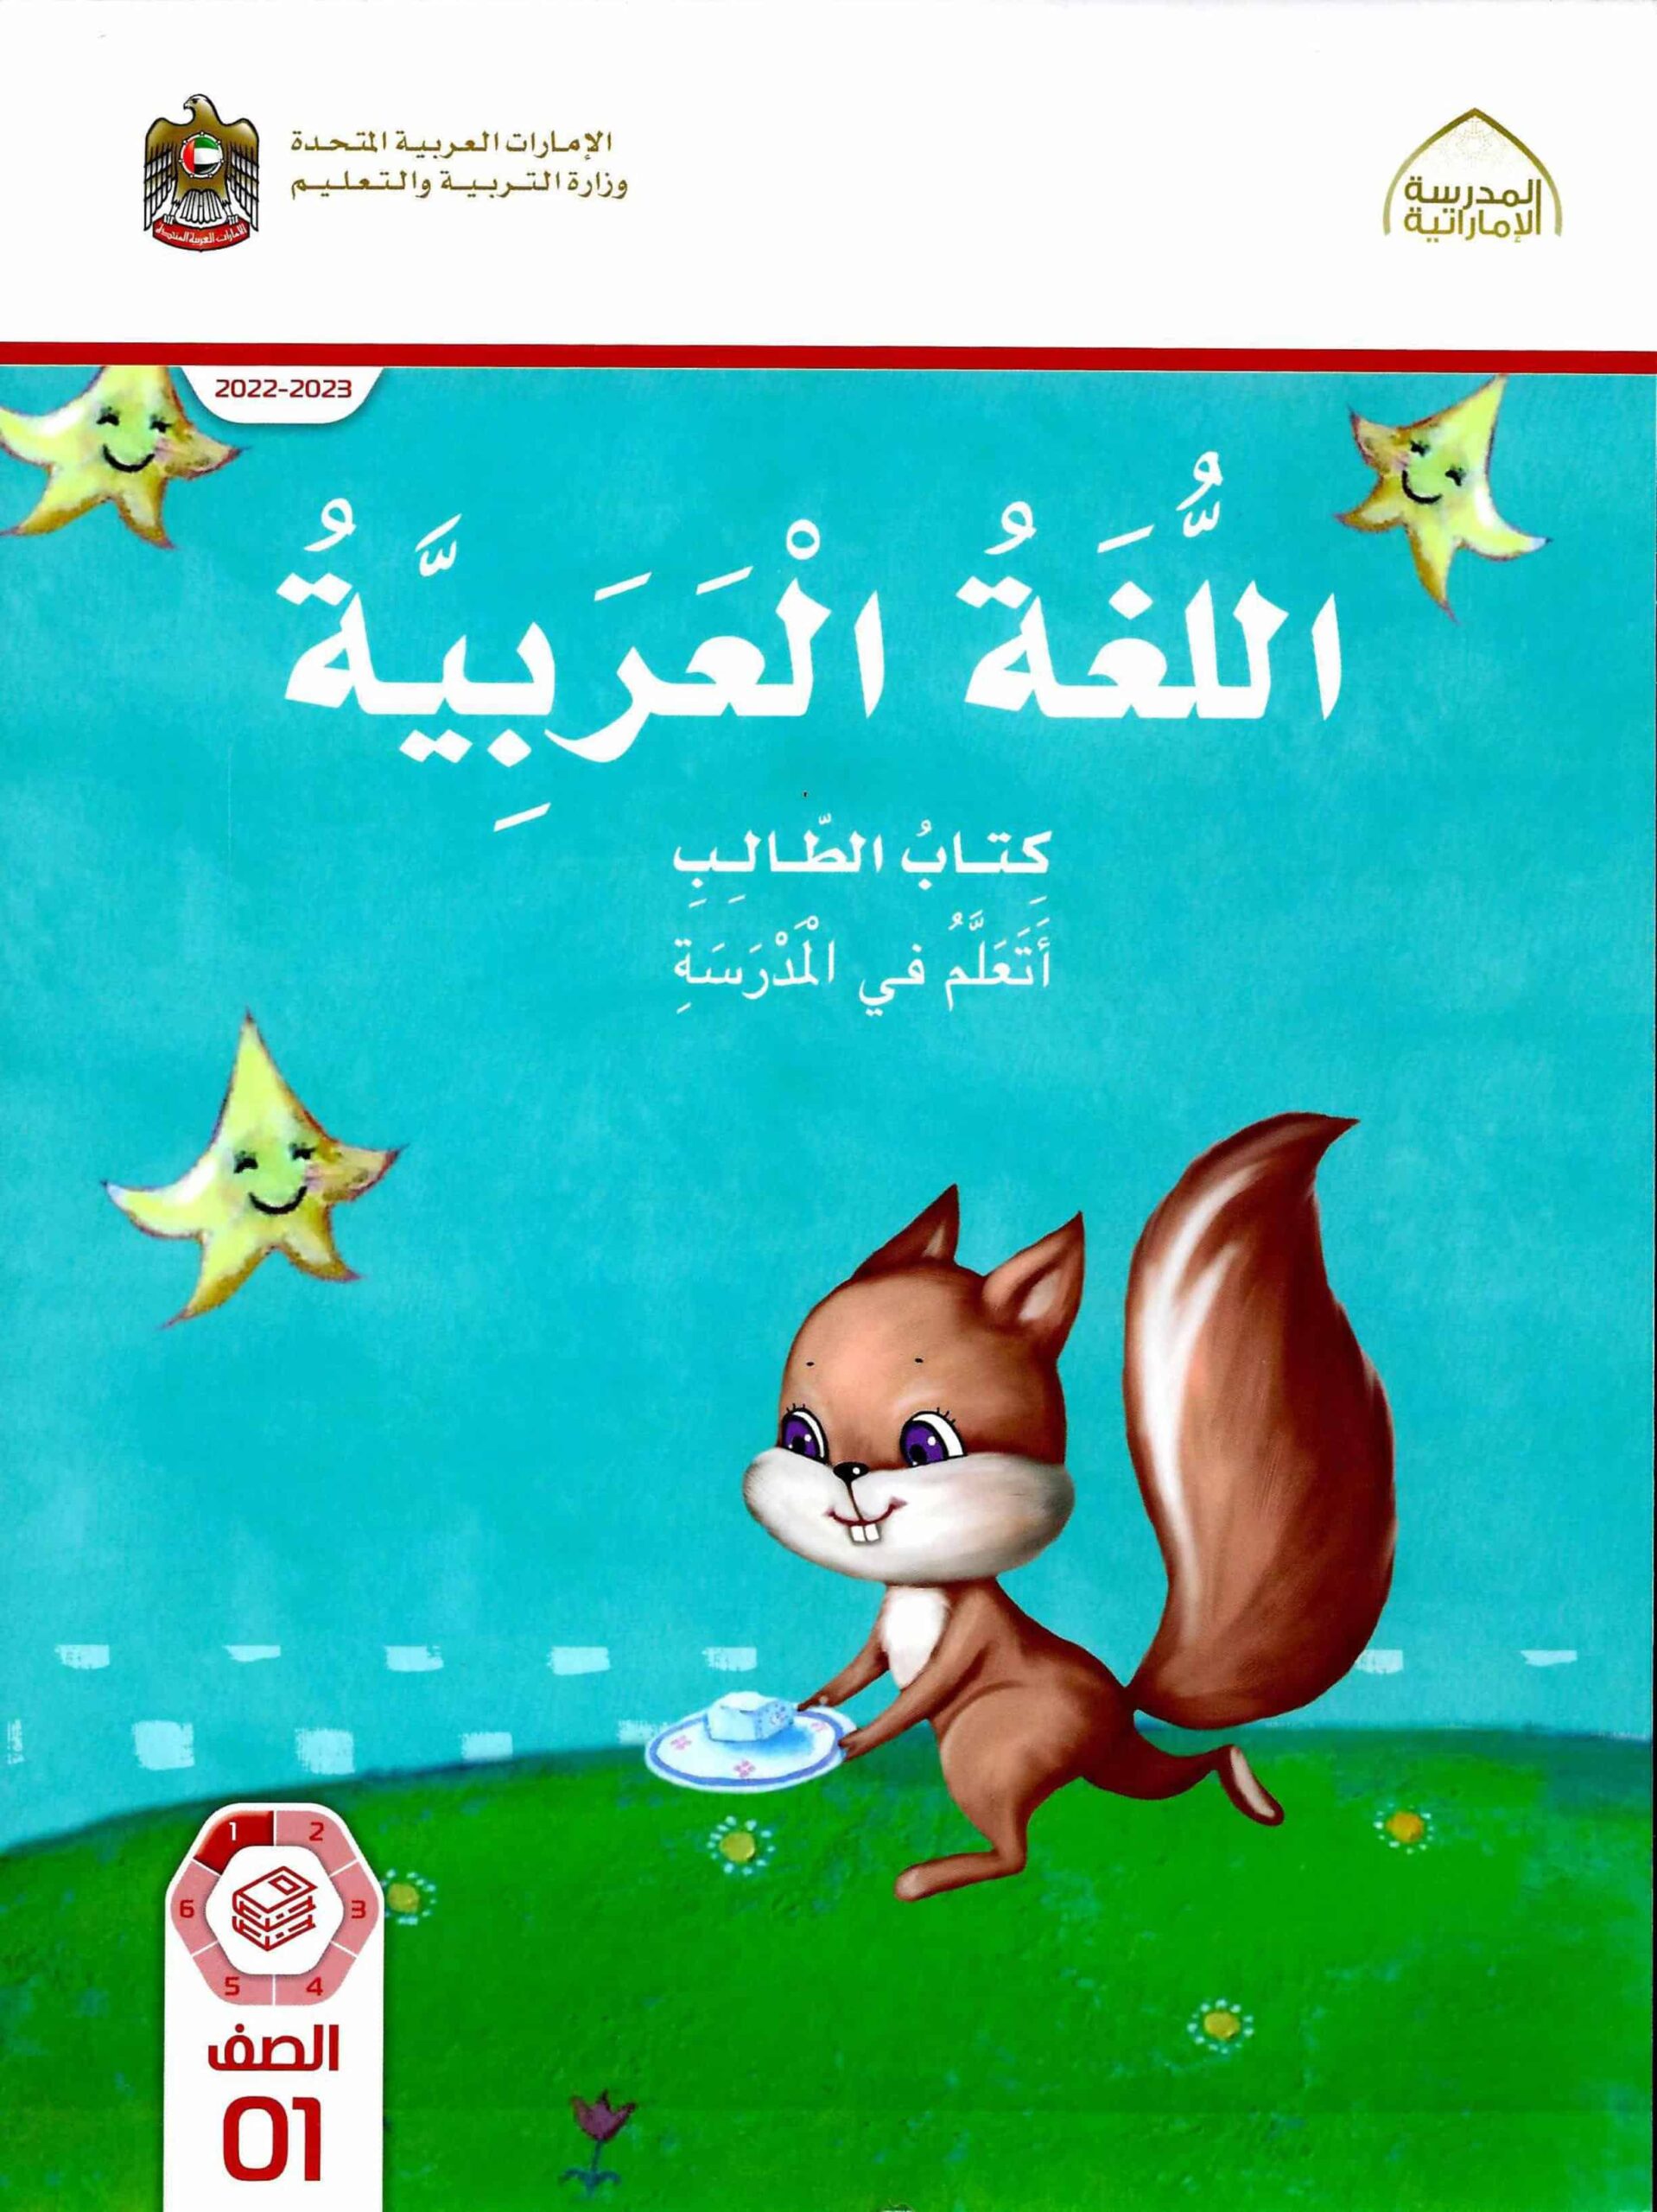 كتاب الطالب الجزء الأول اللغة العربية الصف الأول الفصل الدراسي الأول 2022-2023 